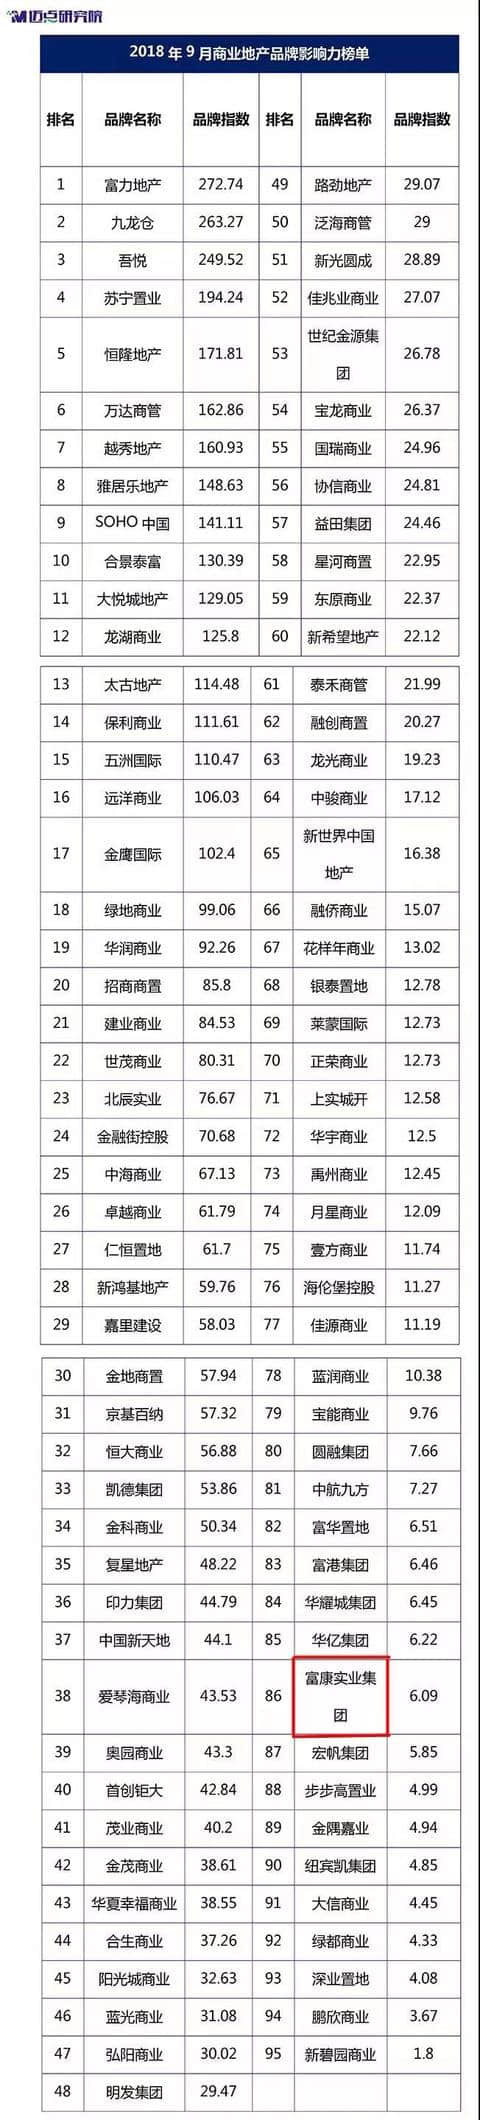 富康实业集团迈入全国商业地产品牌影响力榜单百强行列，位居第86位，贵州唯一！